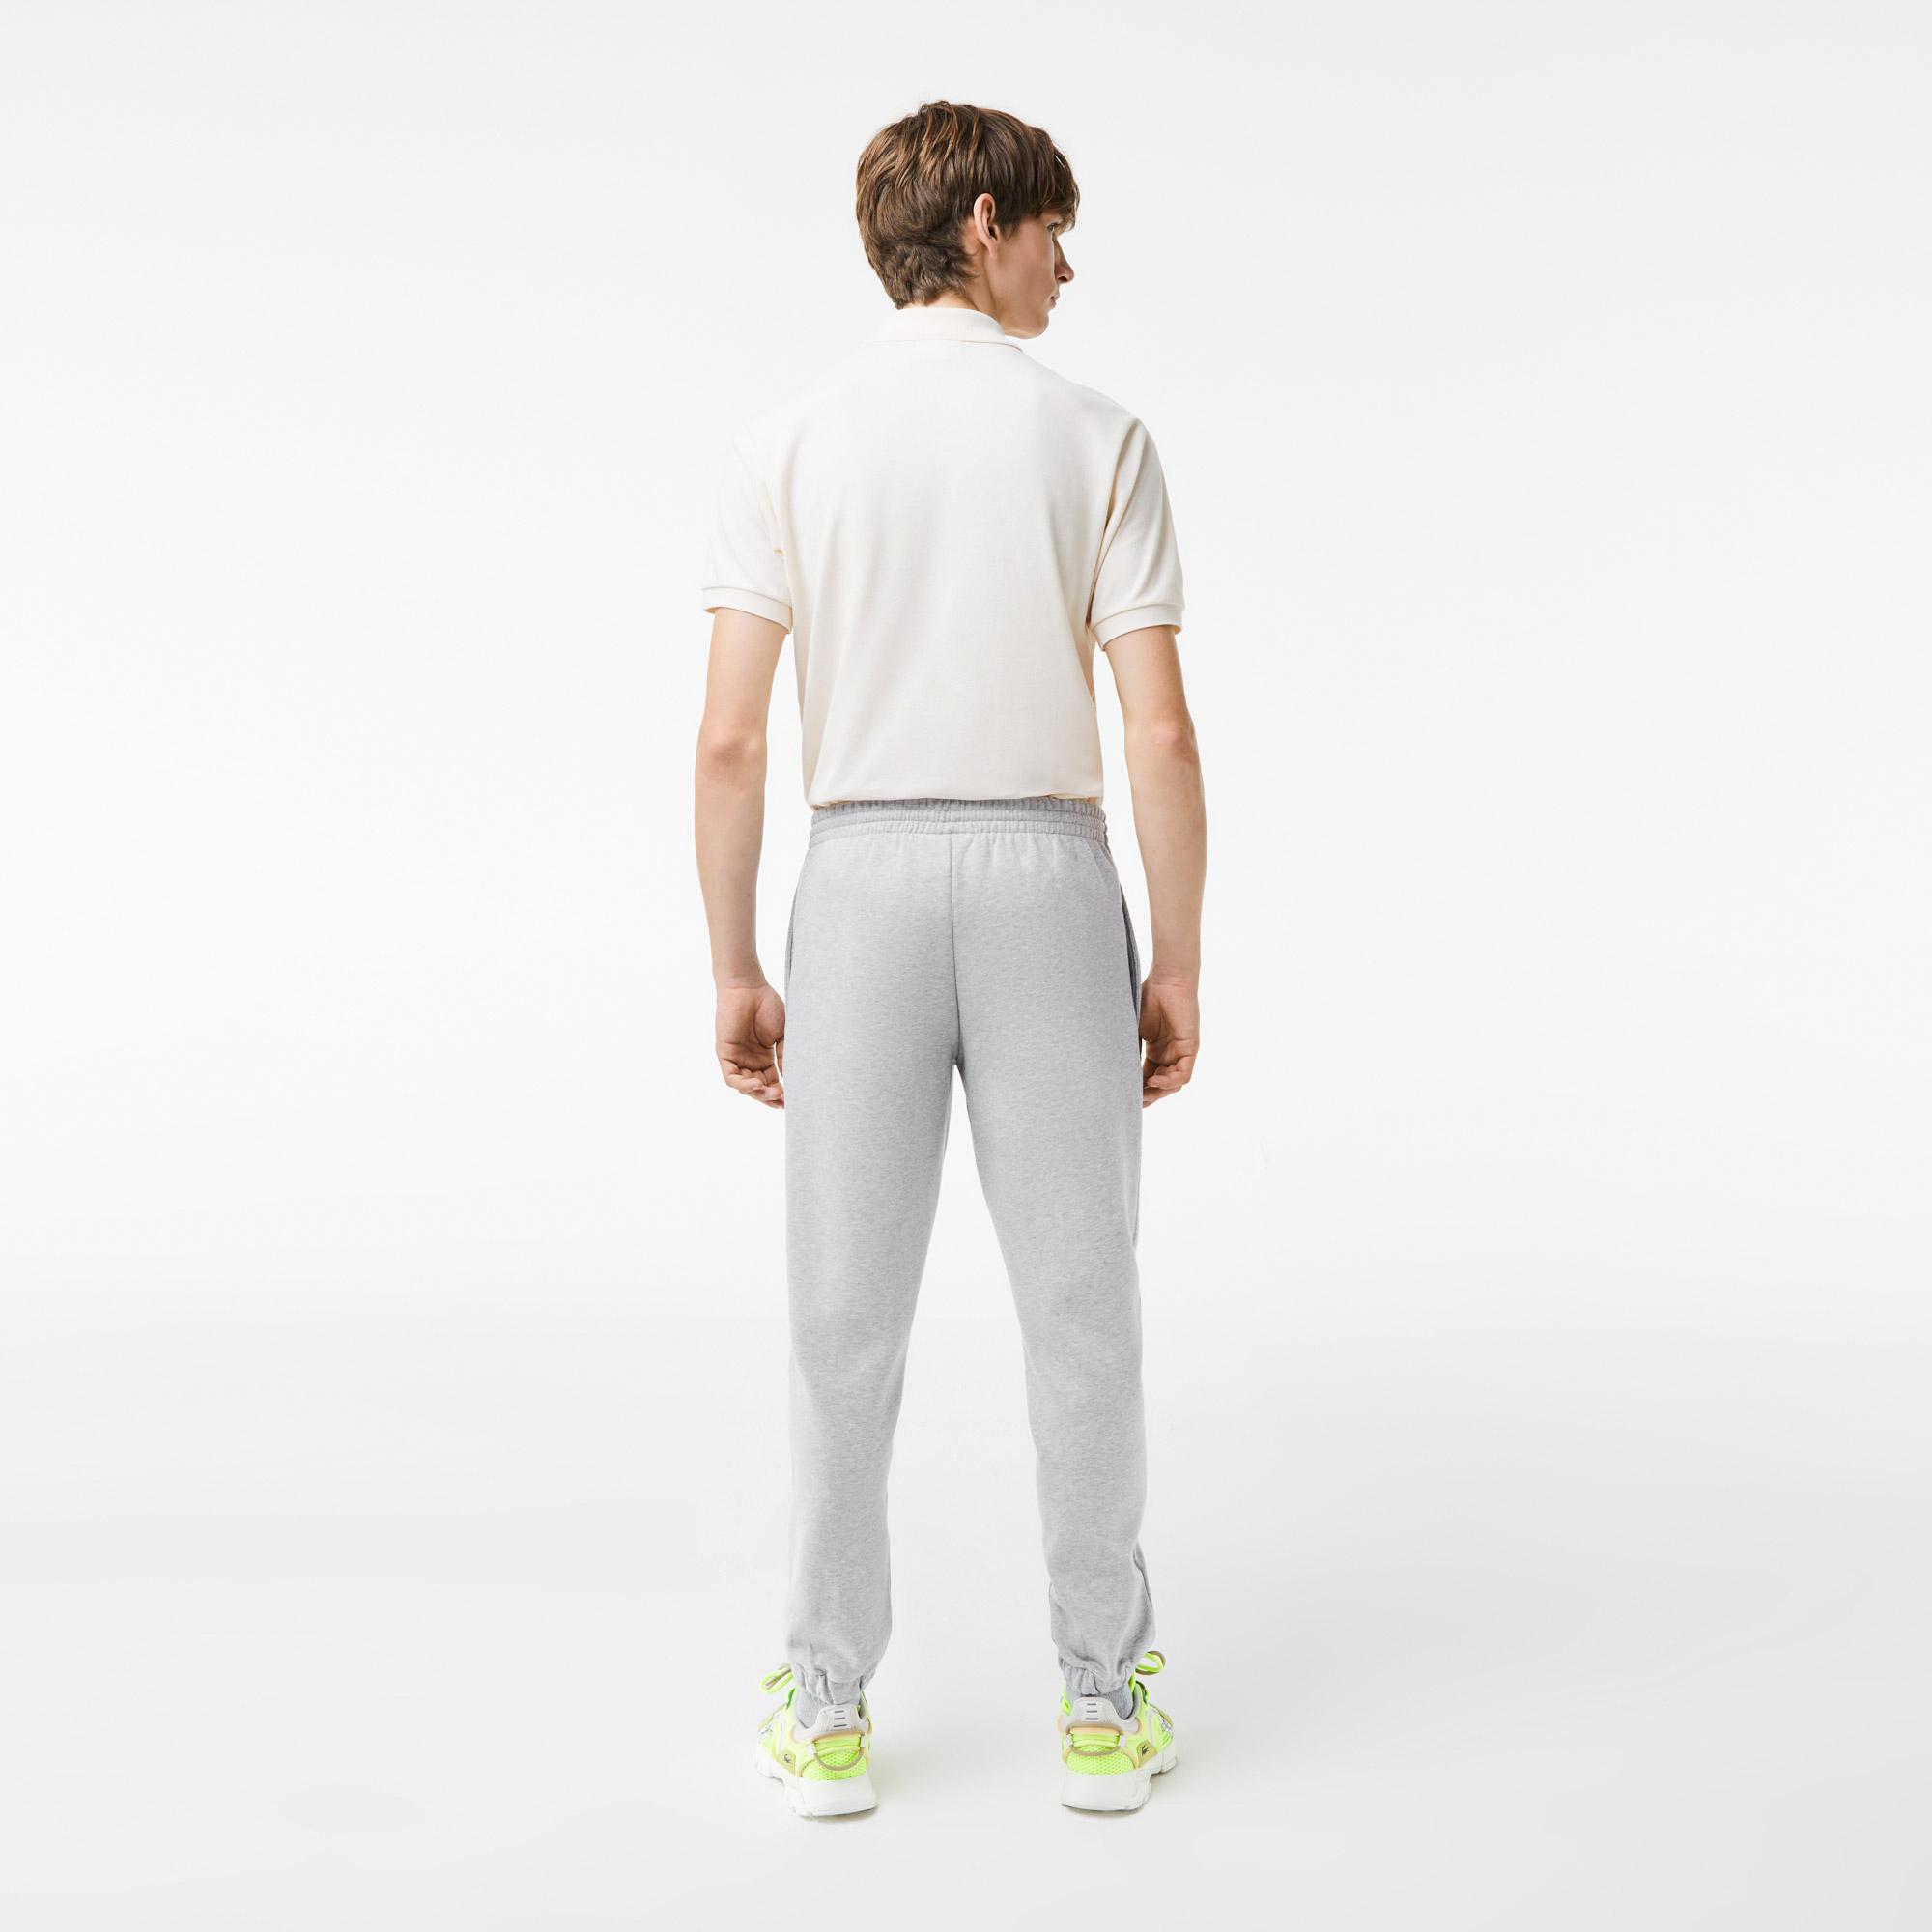 Lacoste męskie spodnie sportowe w bloki kolorystyczne z polaru z bawełny czesanej